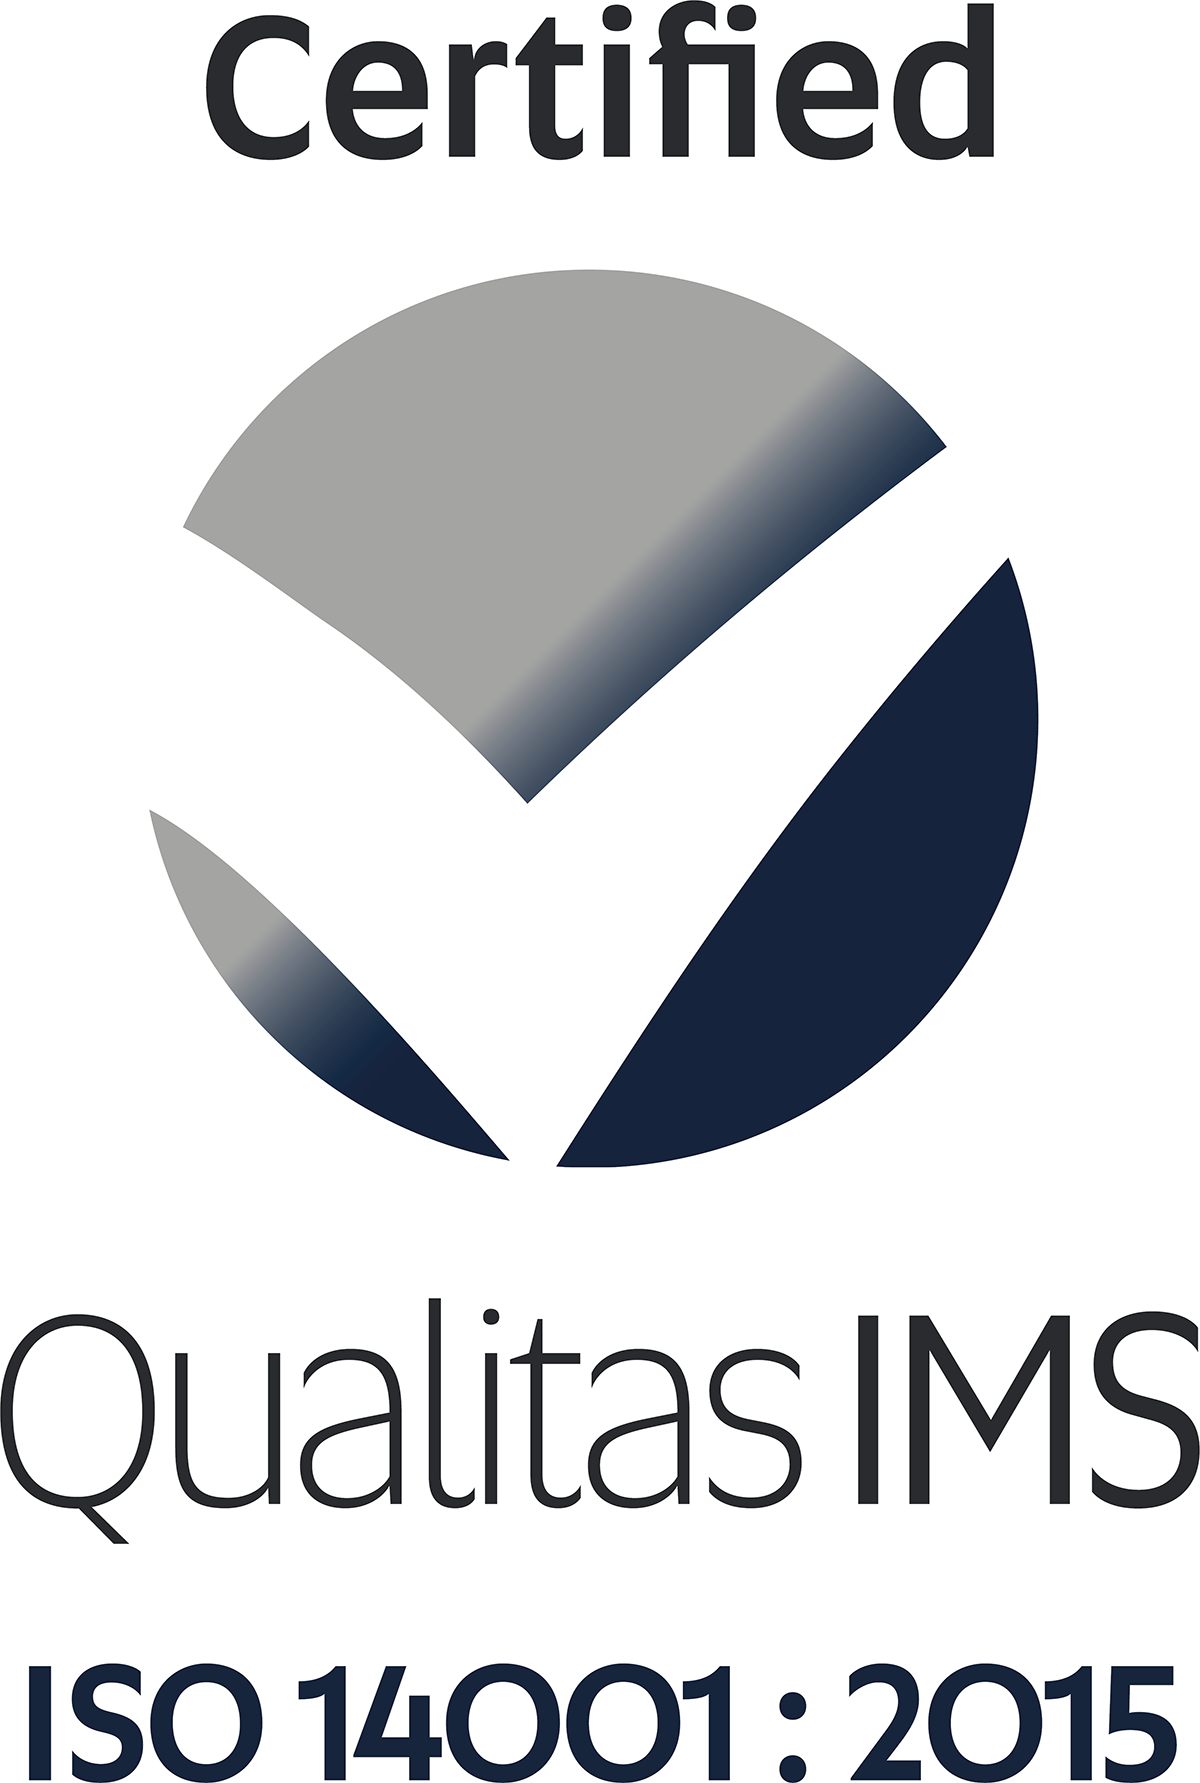 Qualitas IMS 14001 Certified (Full Colour)